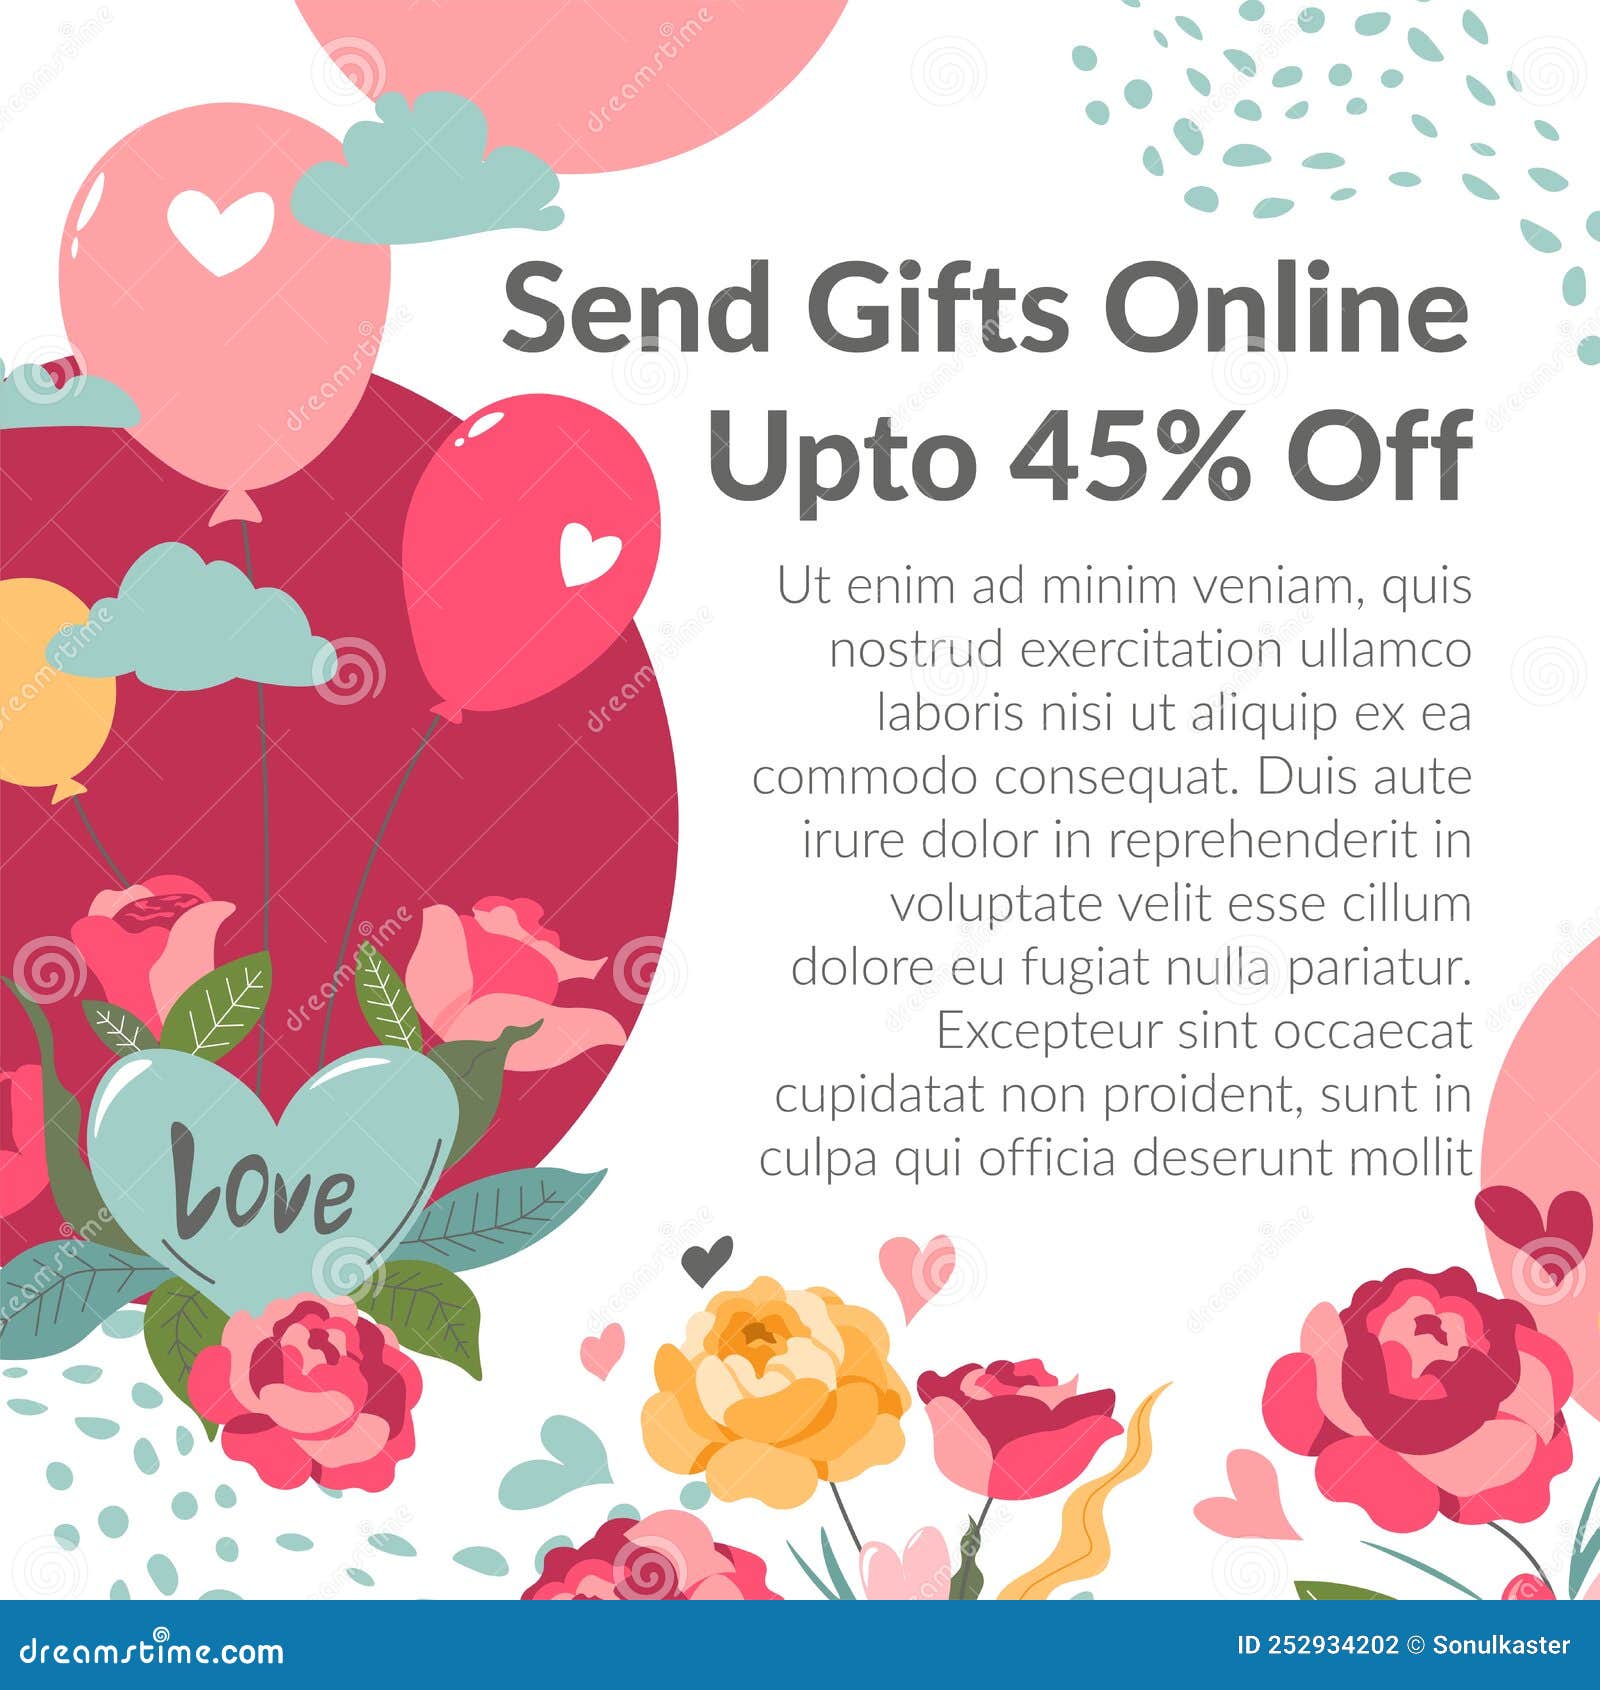 Flower & Cake Delivery Aurangabad | Send Gifts Online!